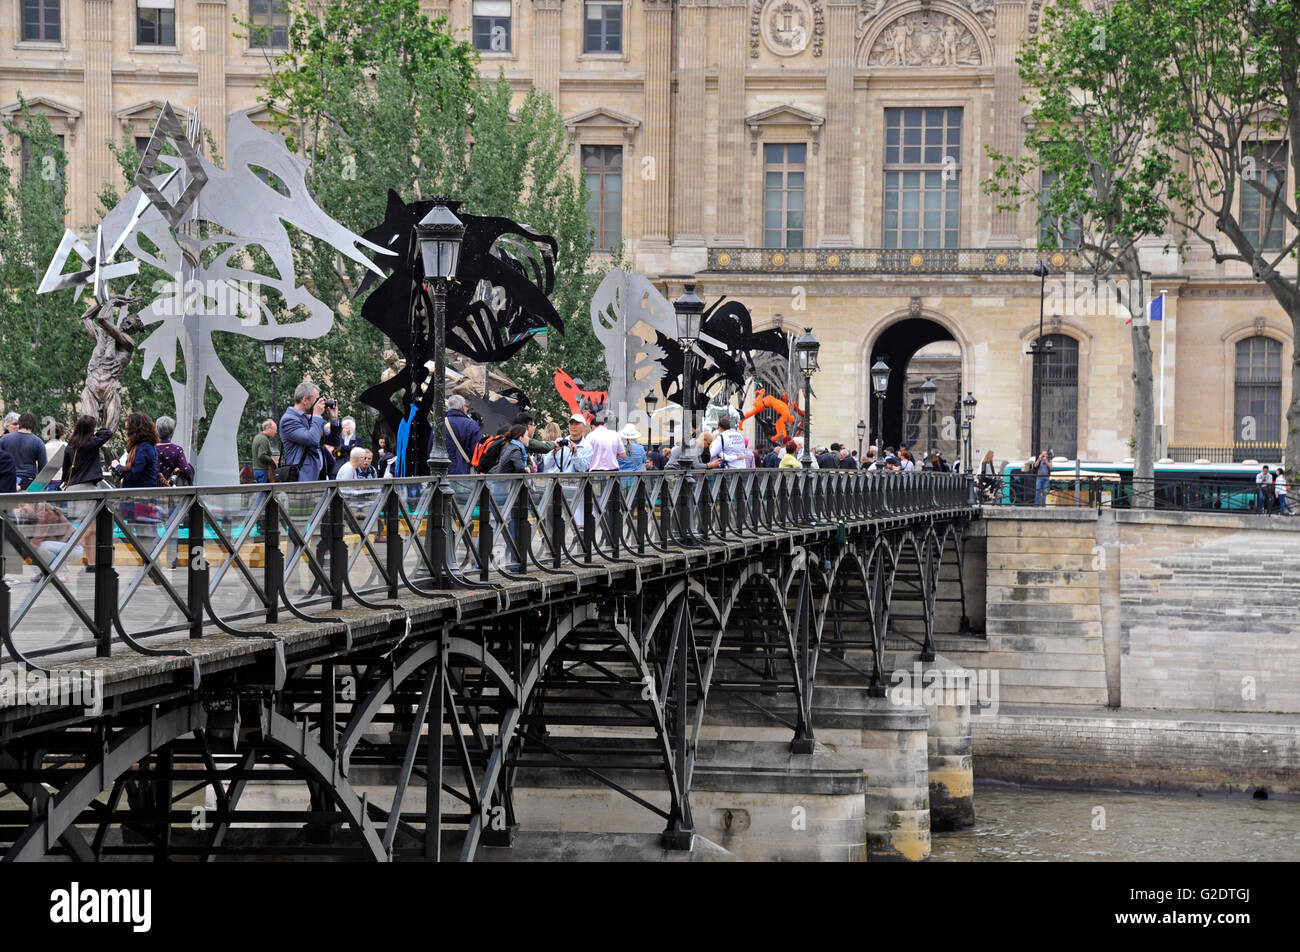 La Passerelle enchantee by Daniel Hourde Sculptor, Pont des Arts footbridge on the Seine river, Paris, France, Louvre museum Stock Photo